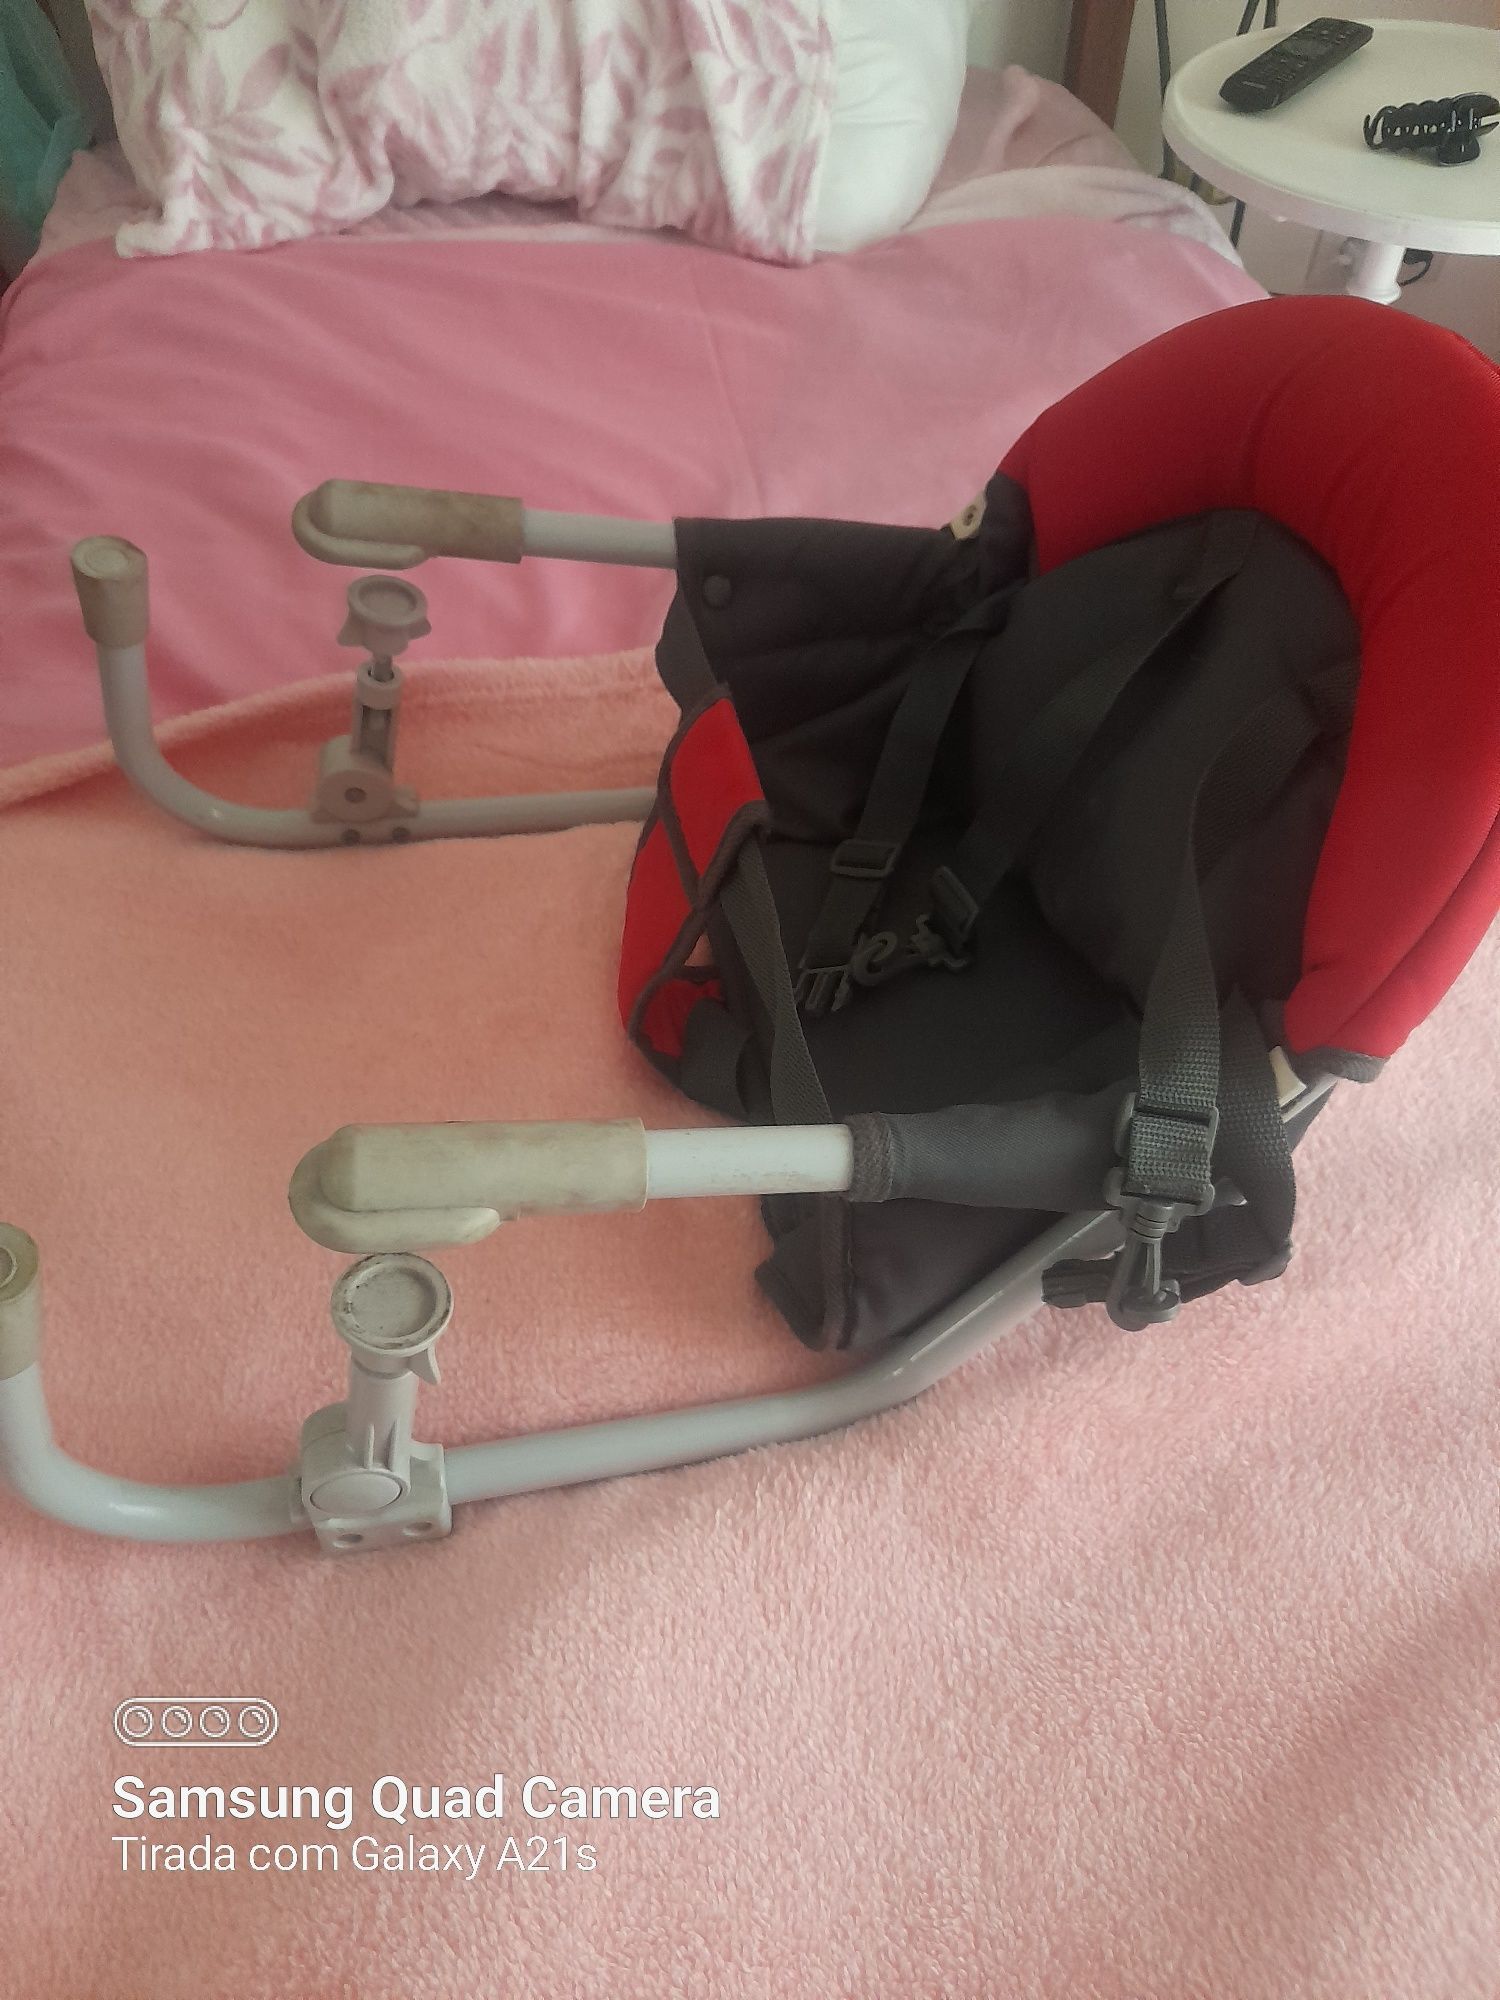 Cadeira para bebé